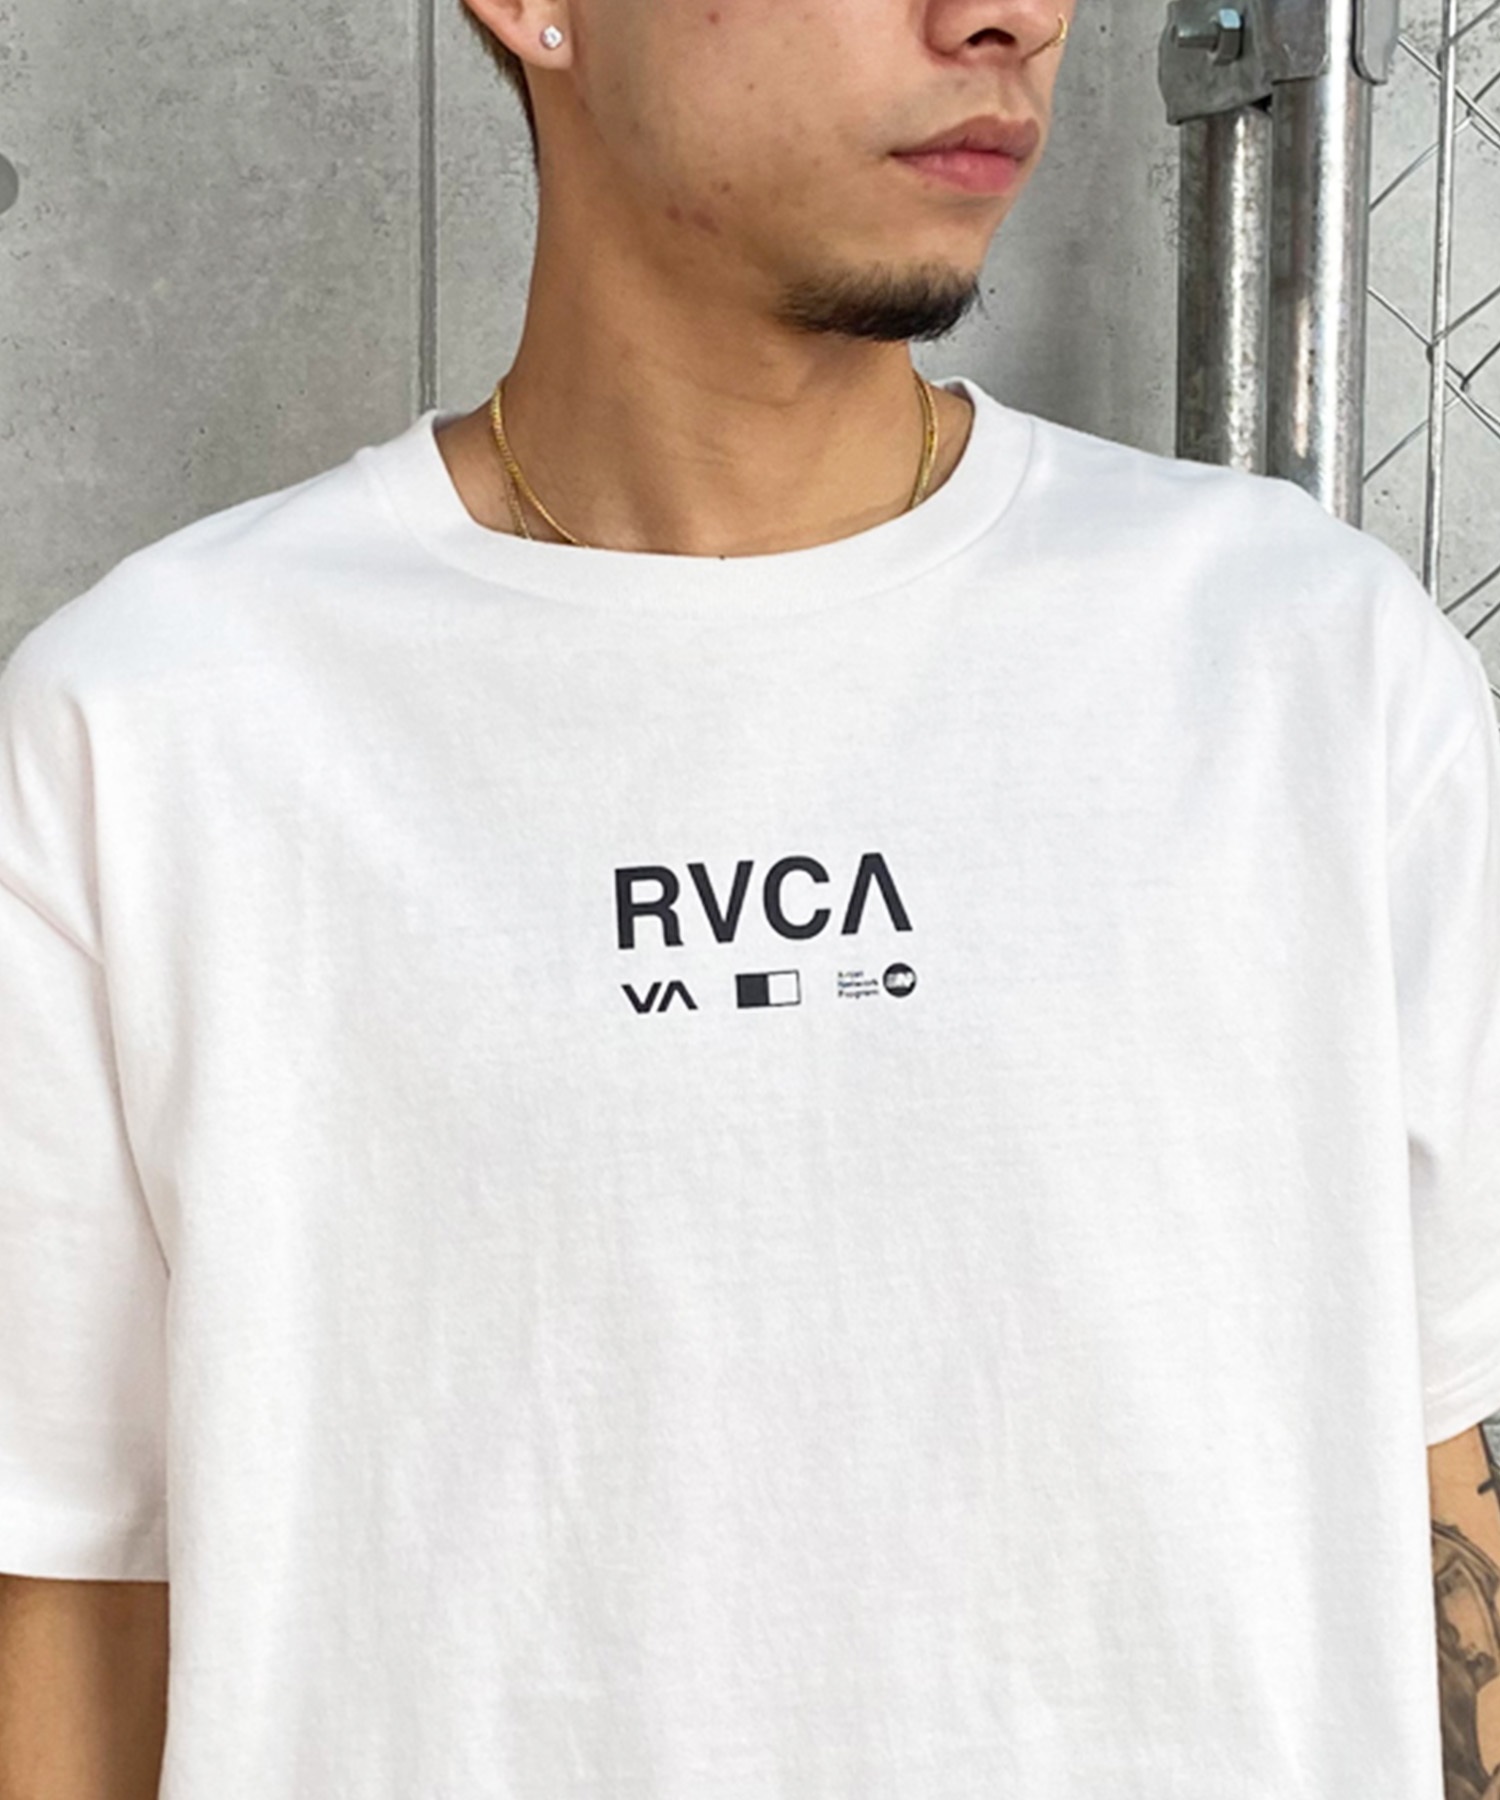 【クーポン対象】RVCA ルーカ メンズ 半袖Tee オーバーサイズ バックプリント フォトデザイン BE04A-241(BLK-S)